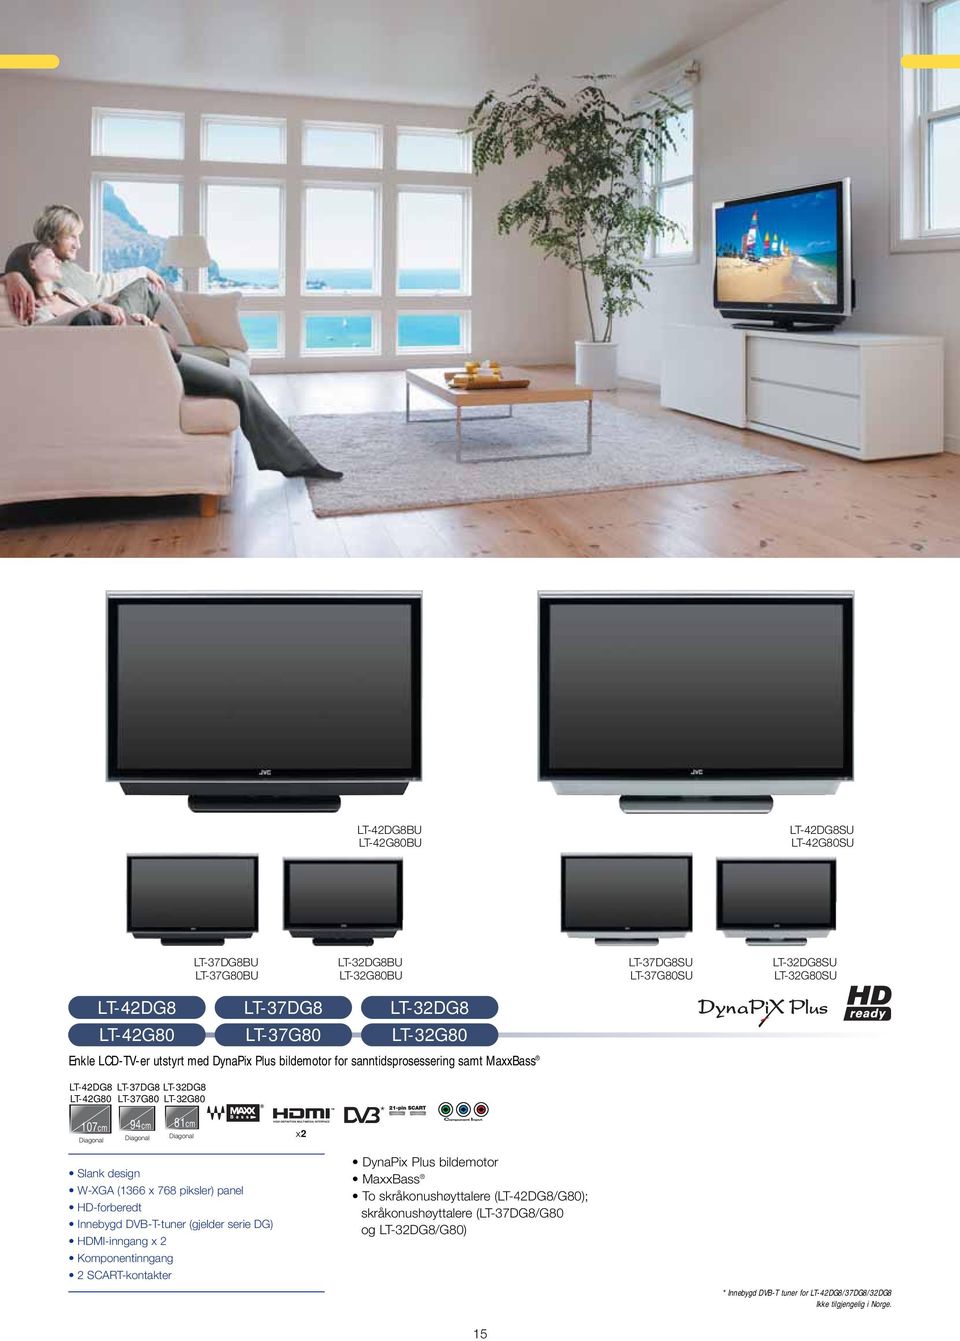 81cm Diagonal x2 * Slank design W-XGA (1366 x 768 piksler) panel HD-forberedt Innebygd DVB-T-tuner (gjelder serie DG) HDMI-inngang x 2 Komponentinngang 2 SCART-kontakter DynaPix Plus